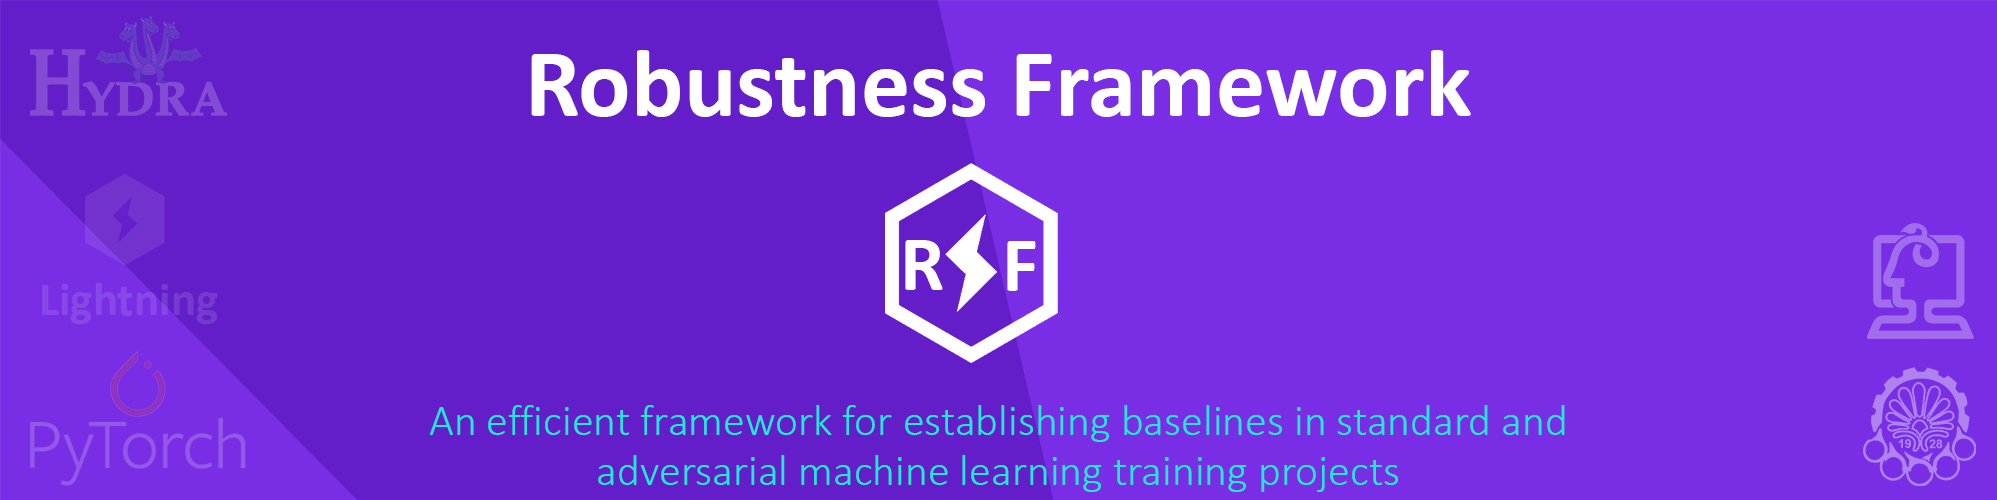 Robustness Framework